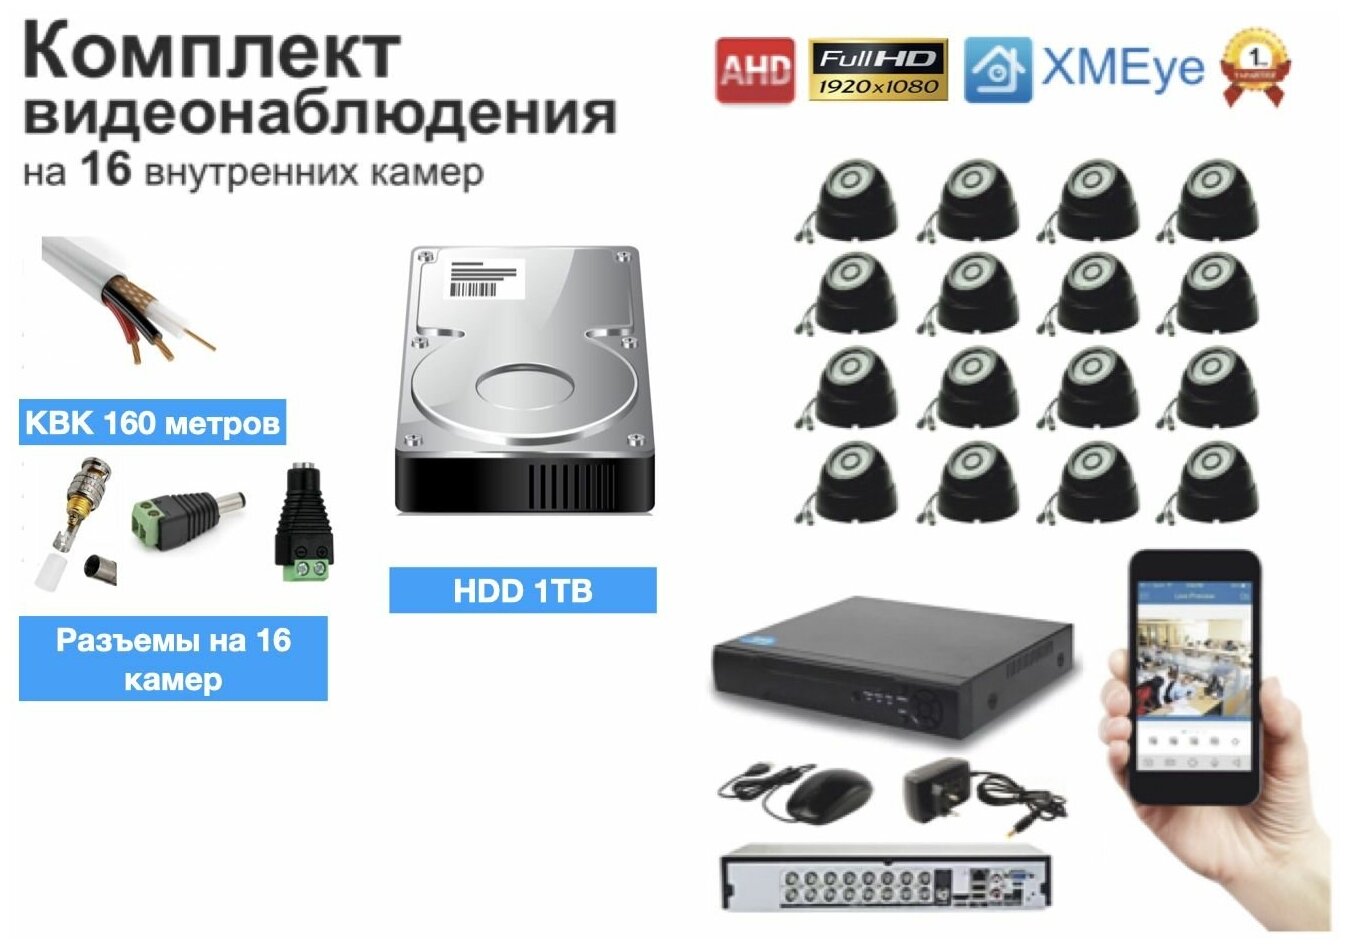 Полный готовый комплект видеонаблюдения на 16 камер (KIT16AHD300B5MP_HDD1TB_KVK)